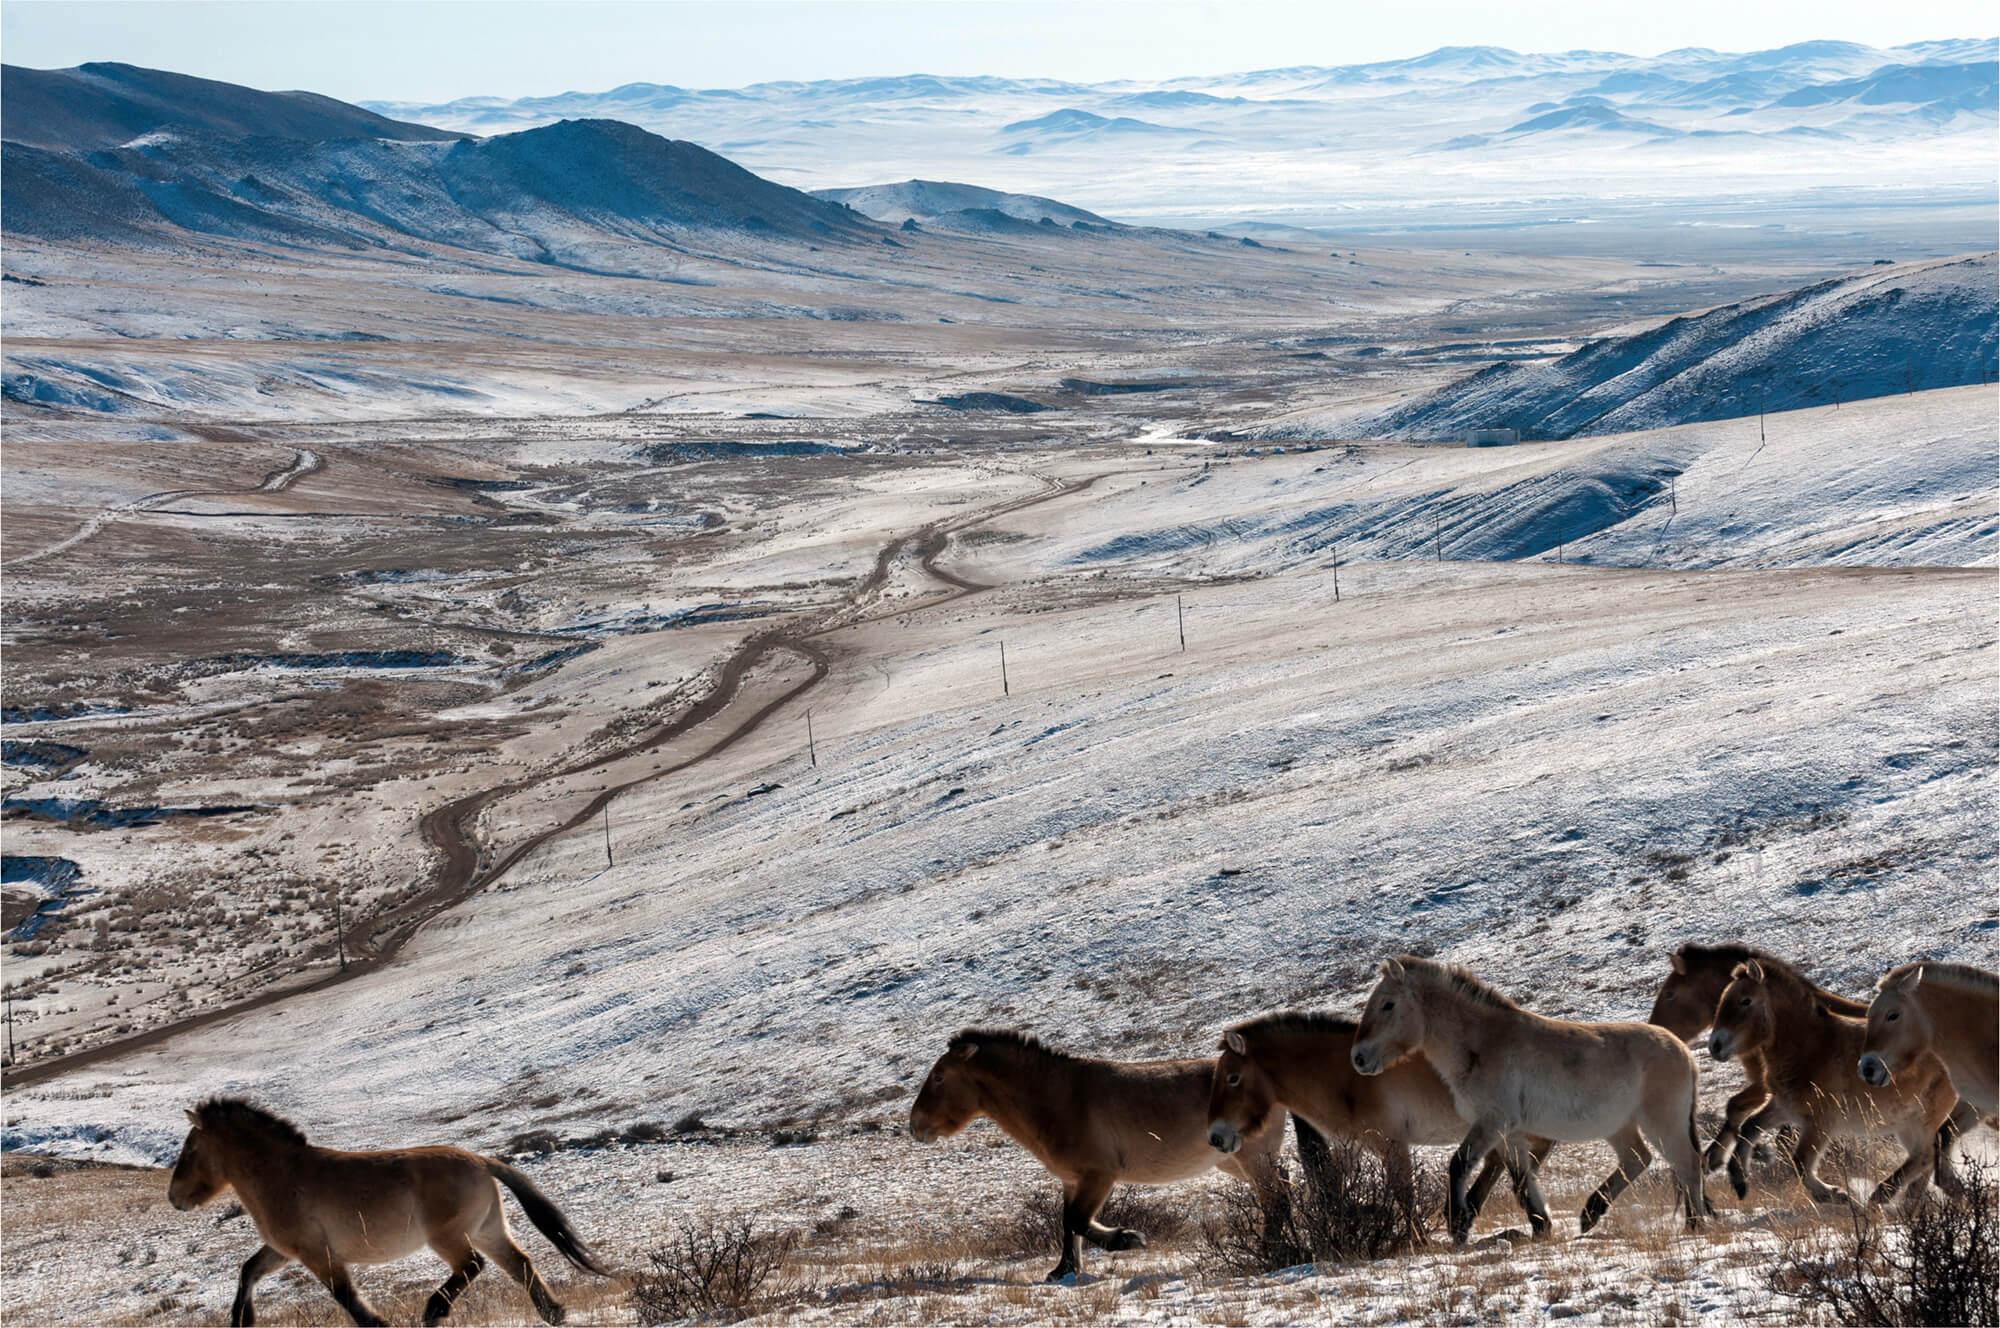 قطيع من الخيول البرية الآسيوية التي تسمى برجفالسكي أو تاخي (لدى السكان المحليين) وسط مشاهد أخّاذة للطبيعة الشاسعة في منتزه هوستاي الوطني في منغوليا.  المصور: أستريد هاريسون     المكان: منغوليا